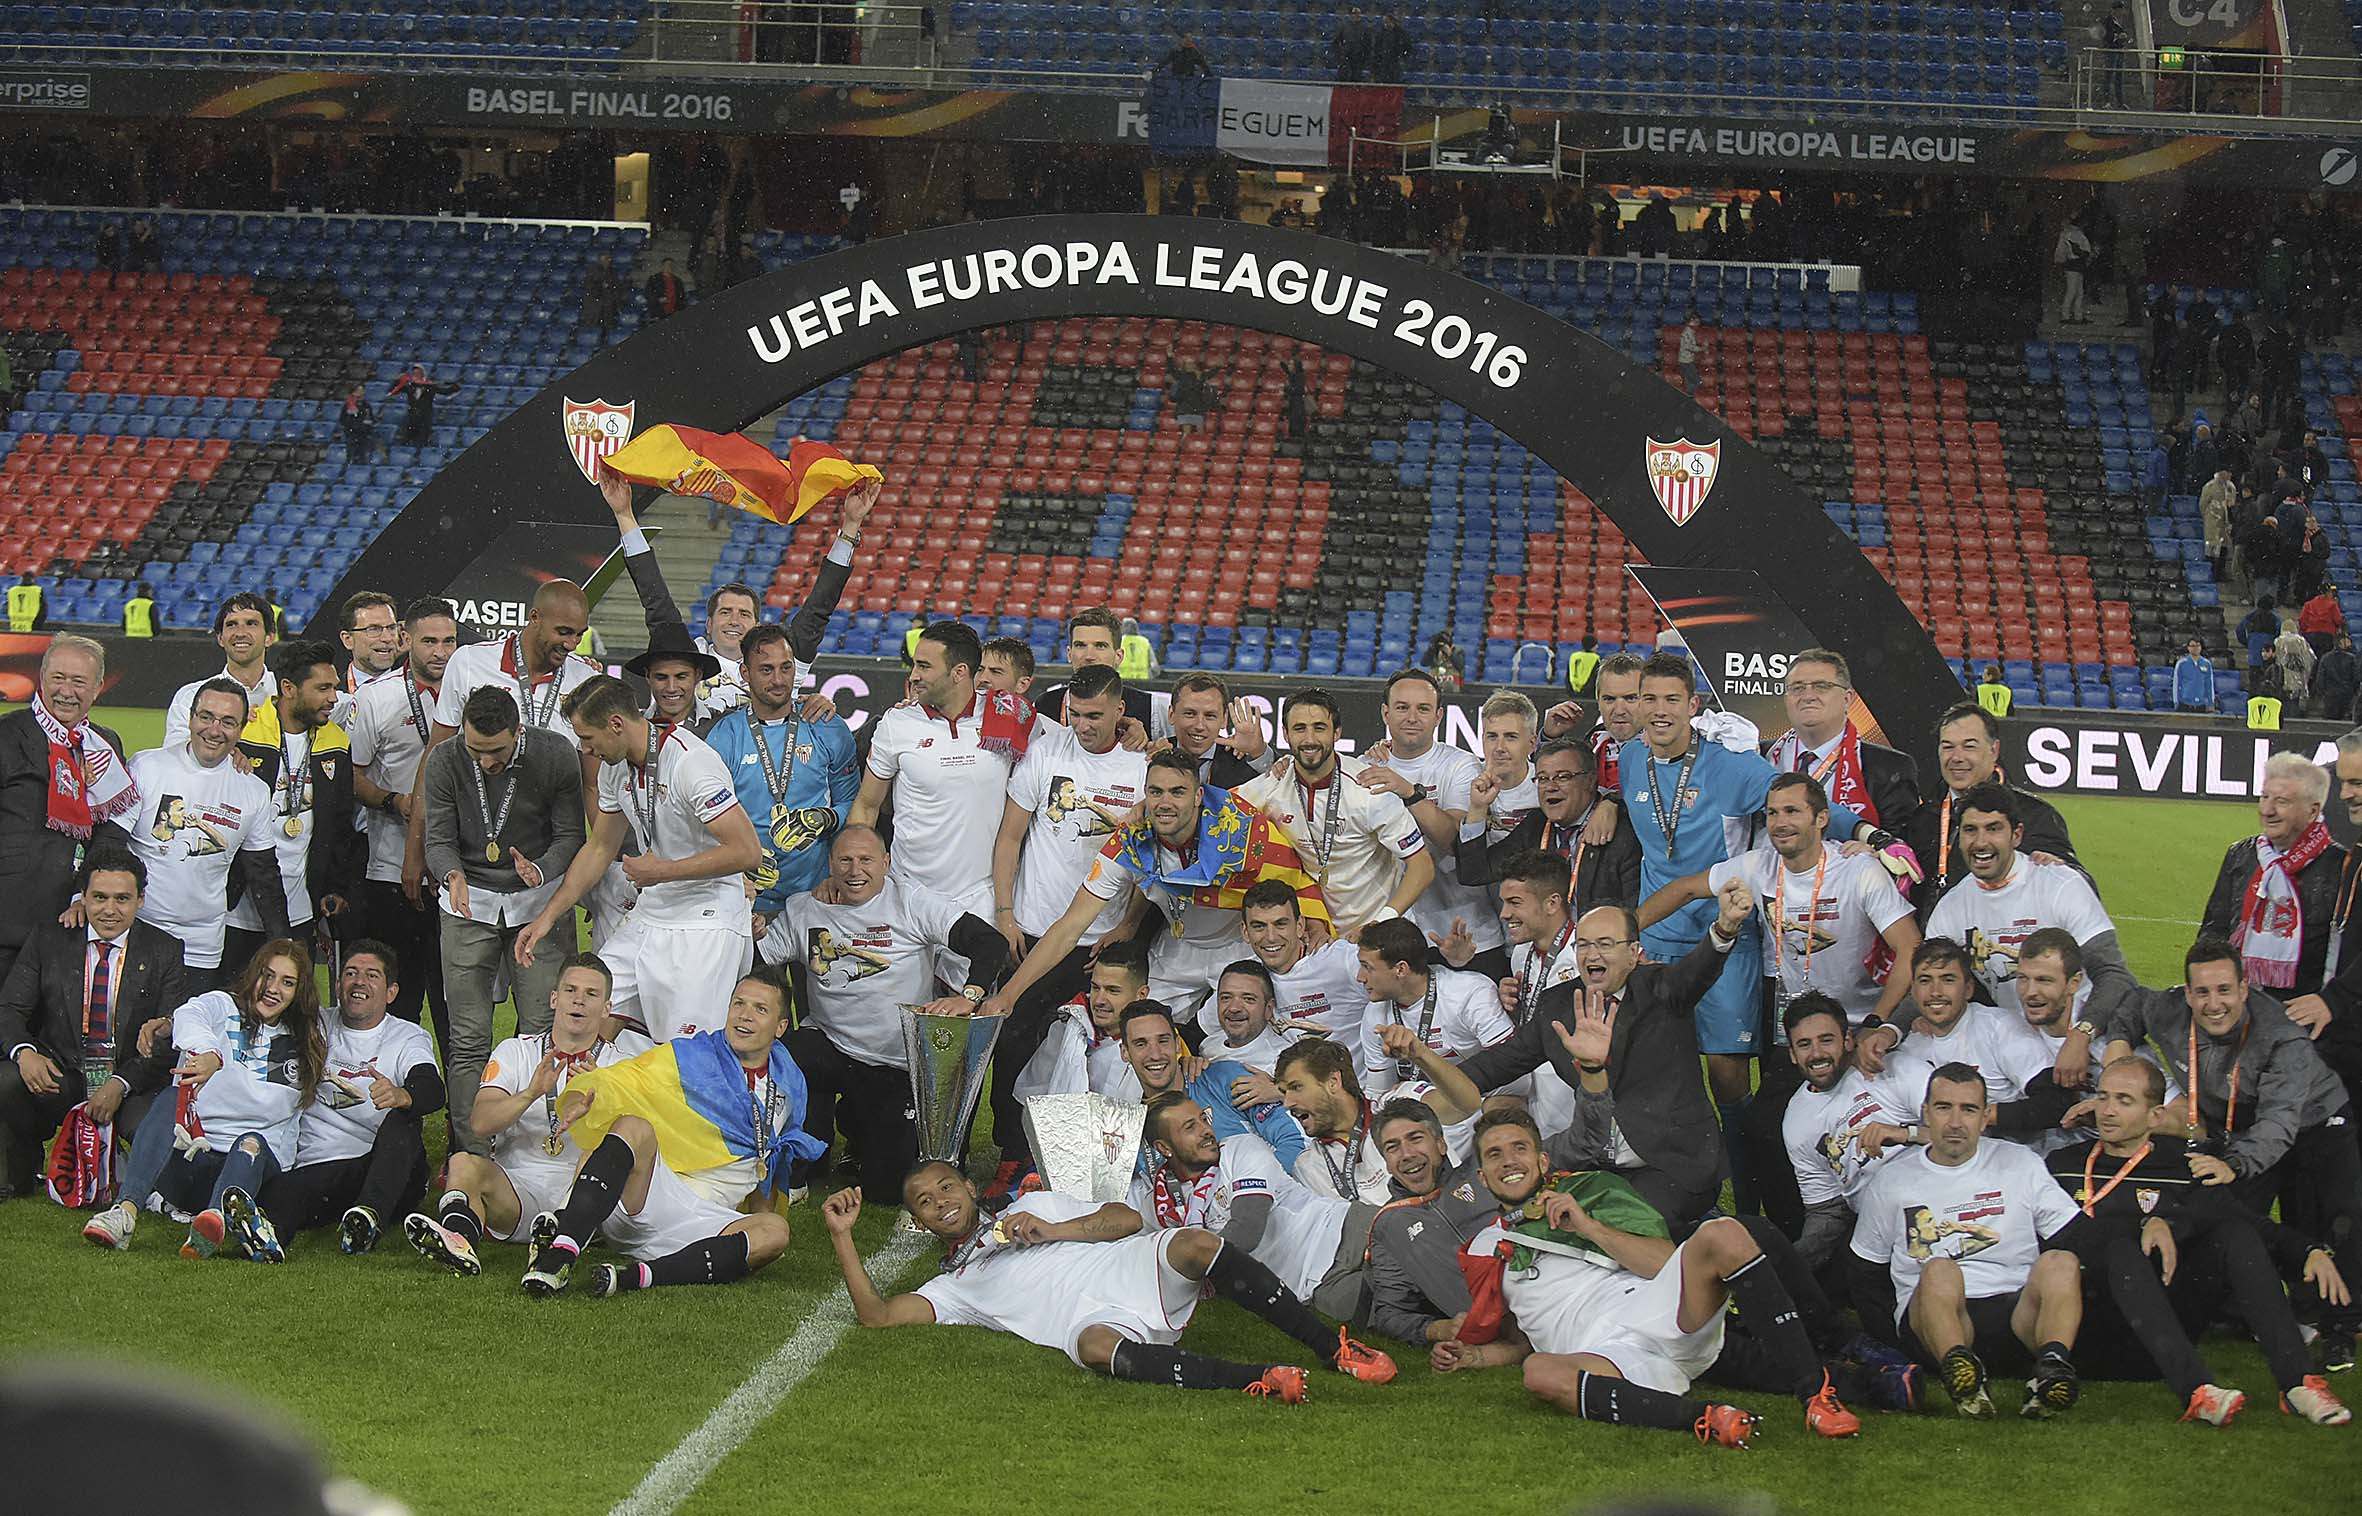 Sevilla FC, campeón de la UEFA Europa League en Basilea